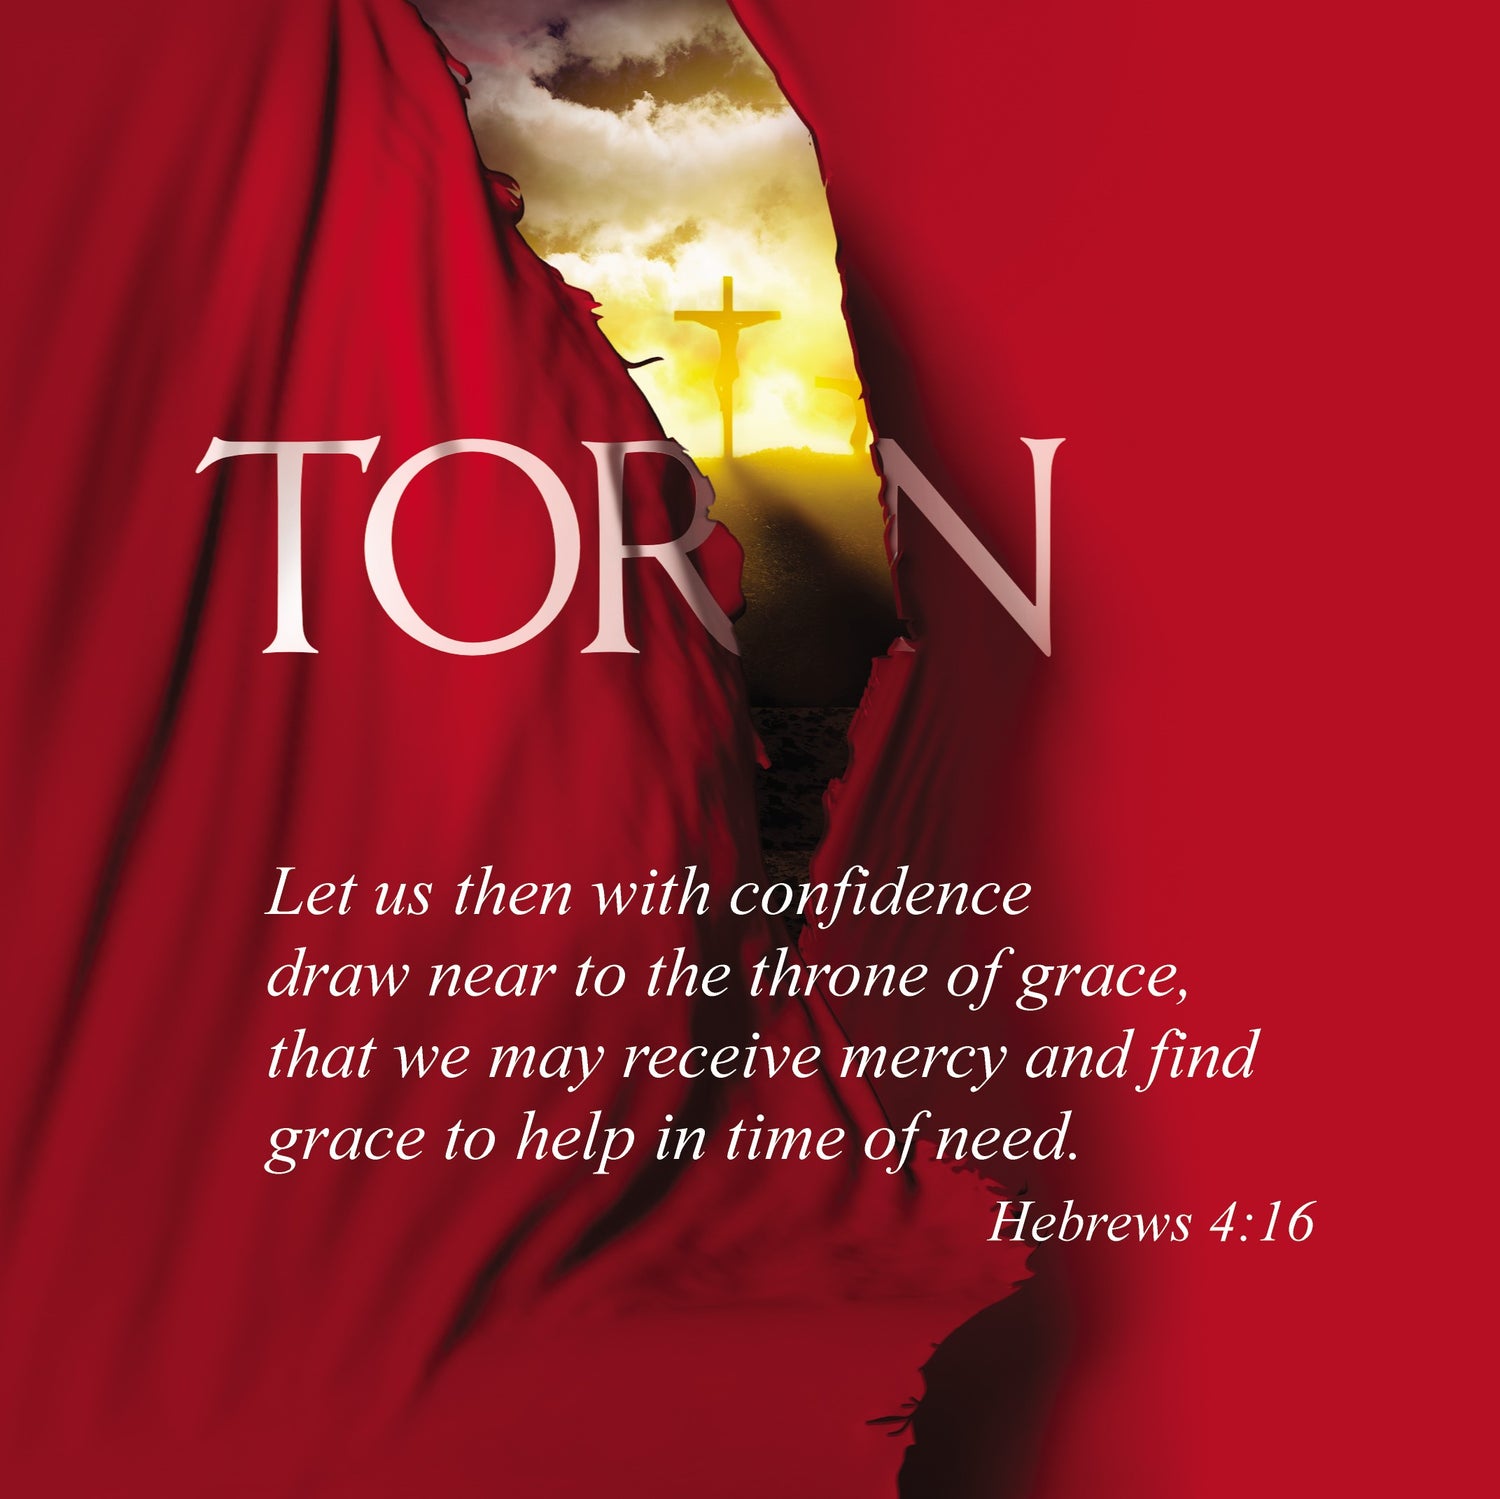 Torn: A Lenten Reflection